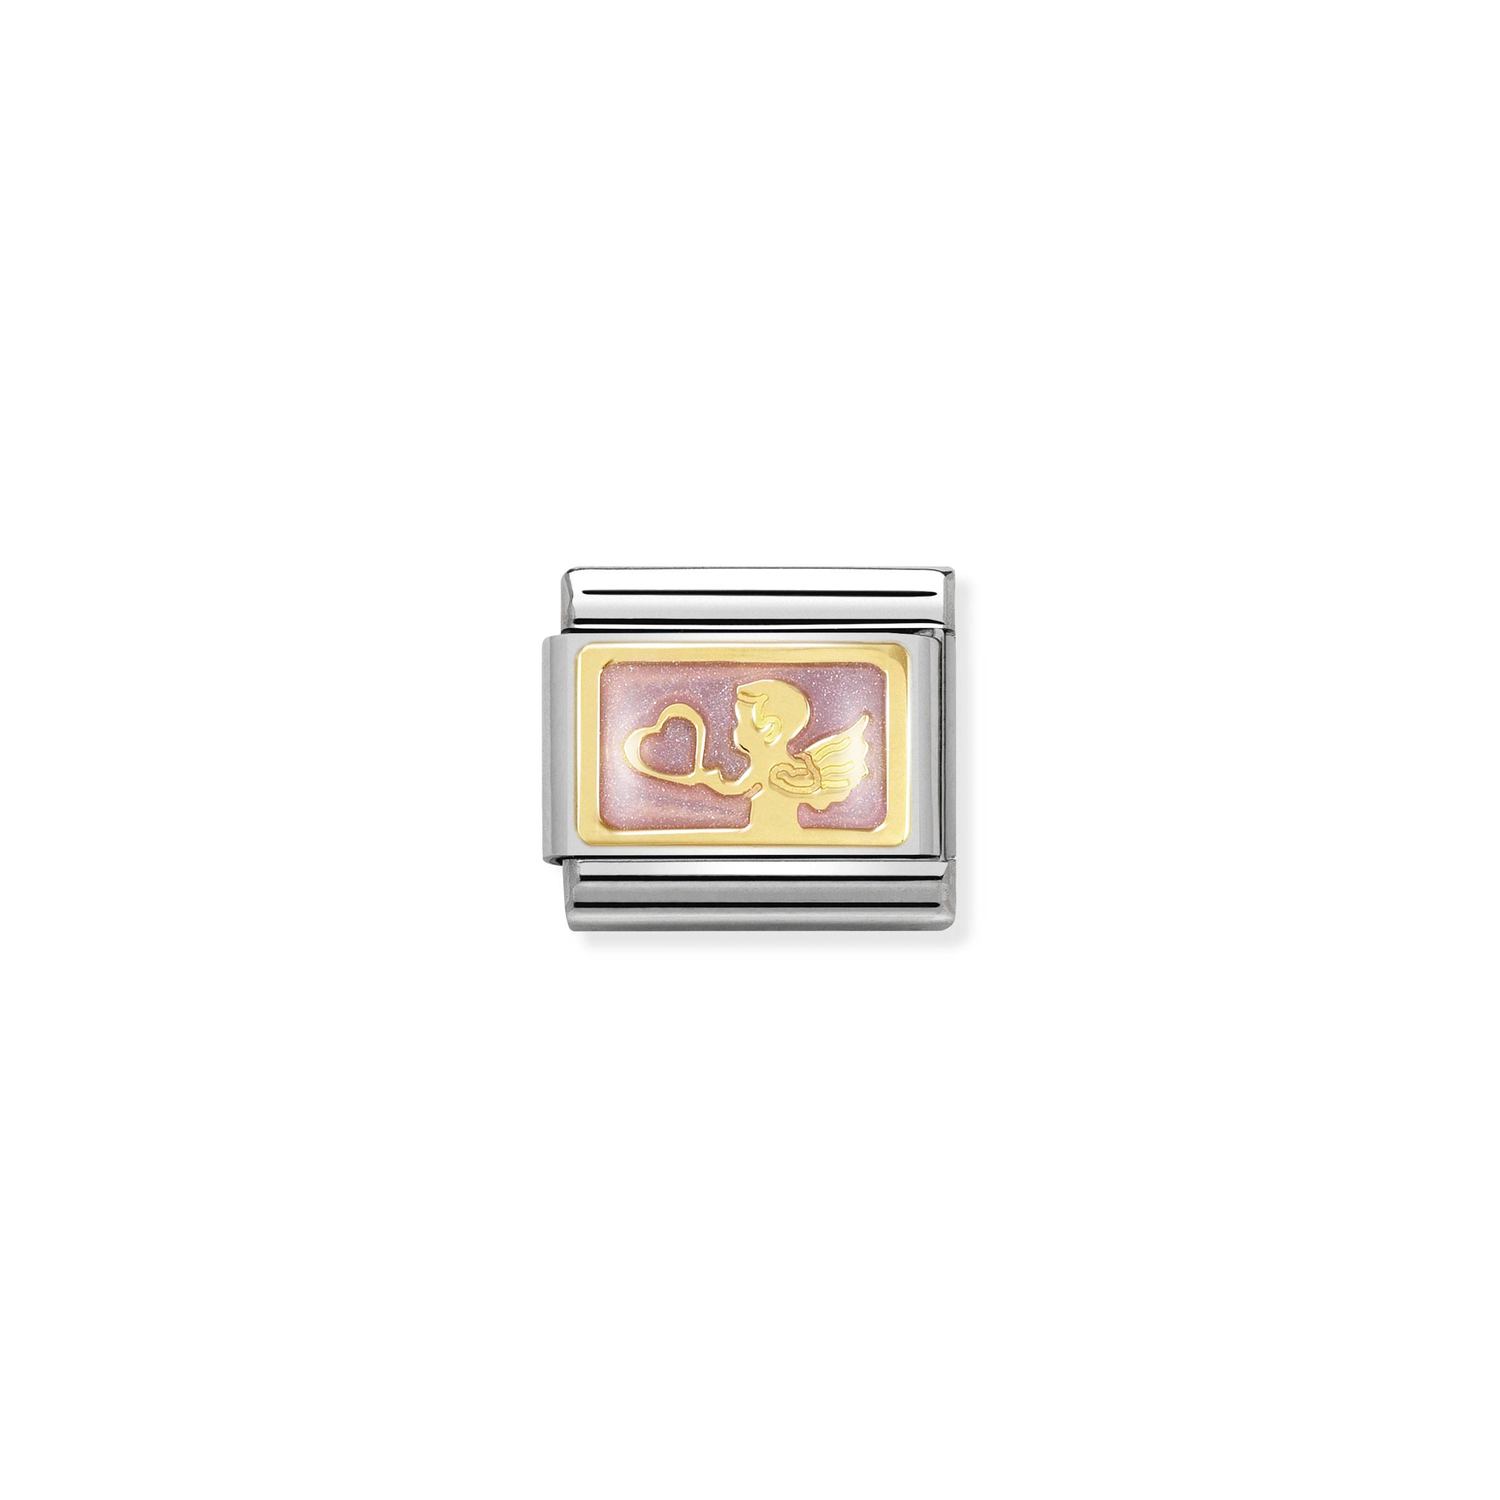 Ogniwo / link do bransolety Nomination Composable stalowe ze złotem 18k anioł (OG-001607) product